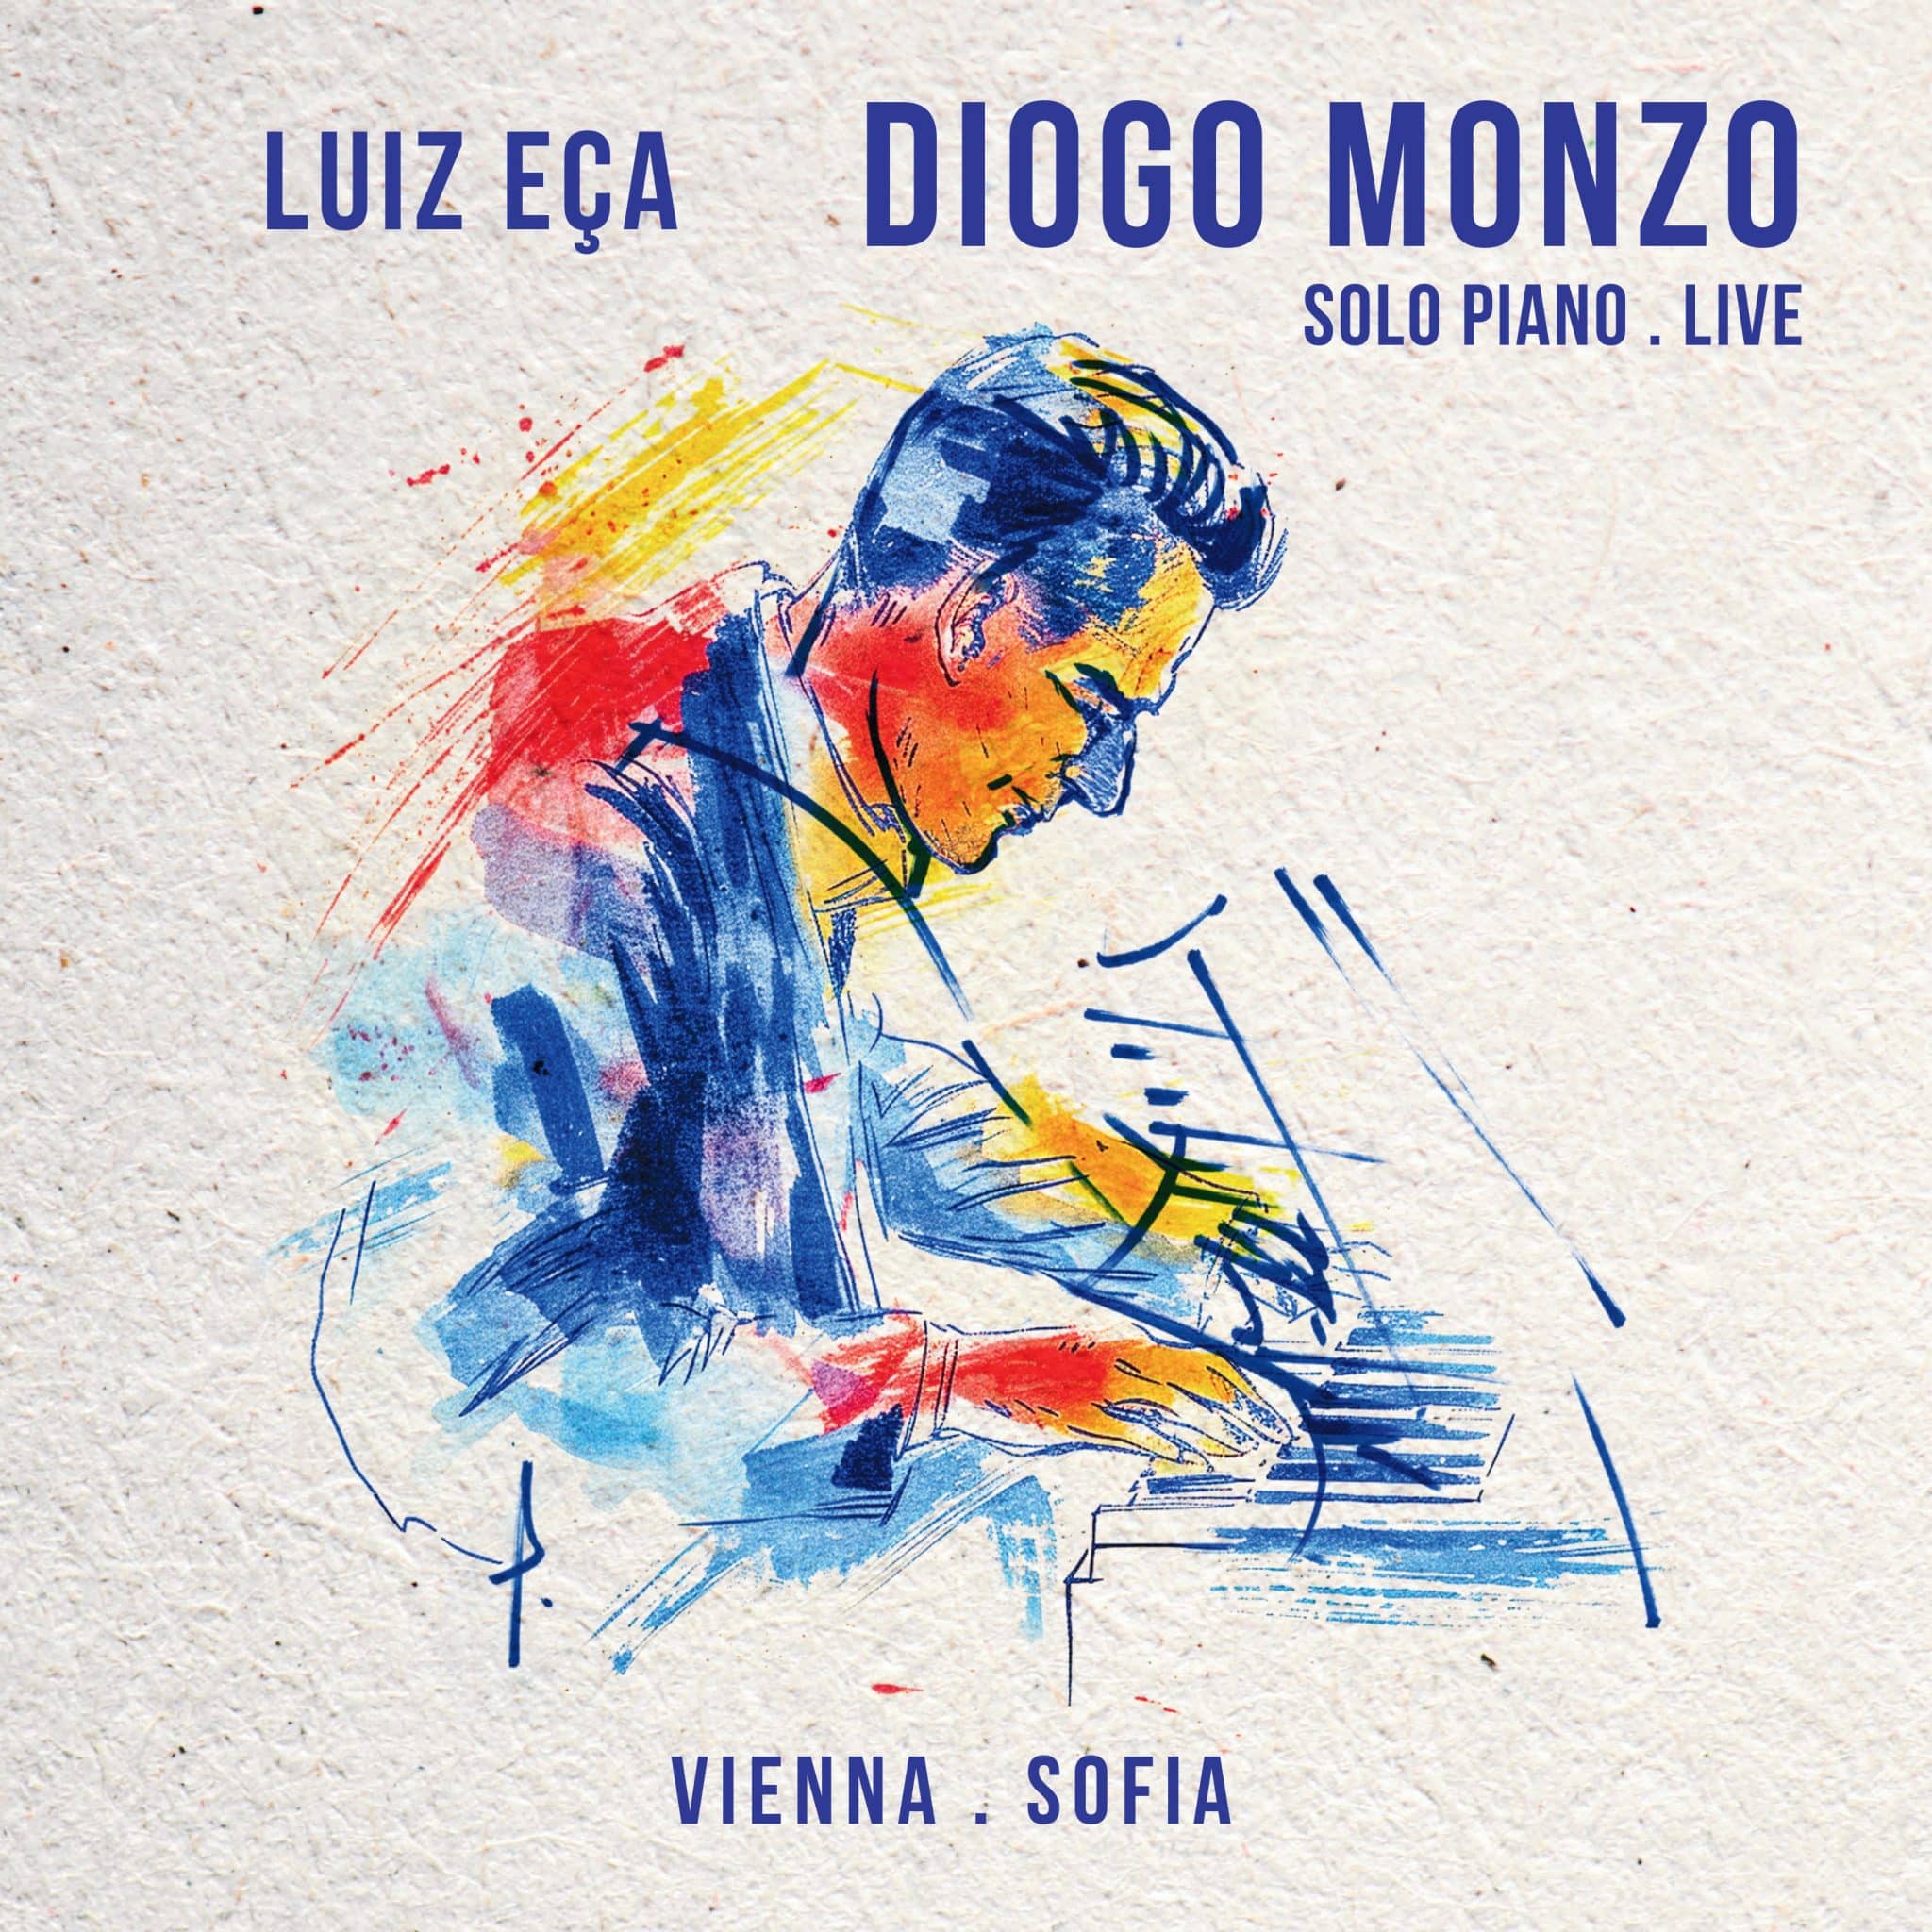 revistaprosaversoearte.com - Luiz Eça ganha tributo do pianista Diogo Monzo